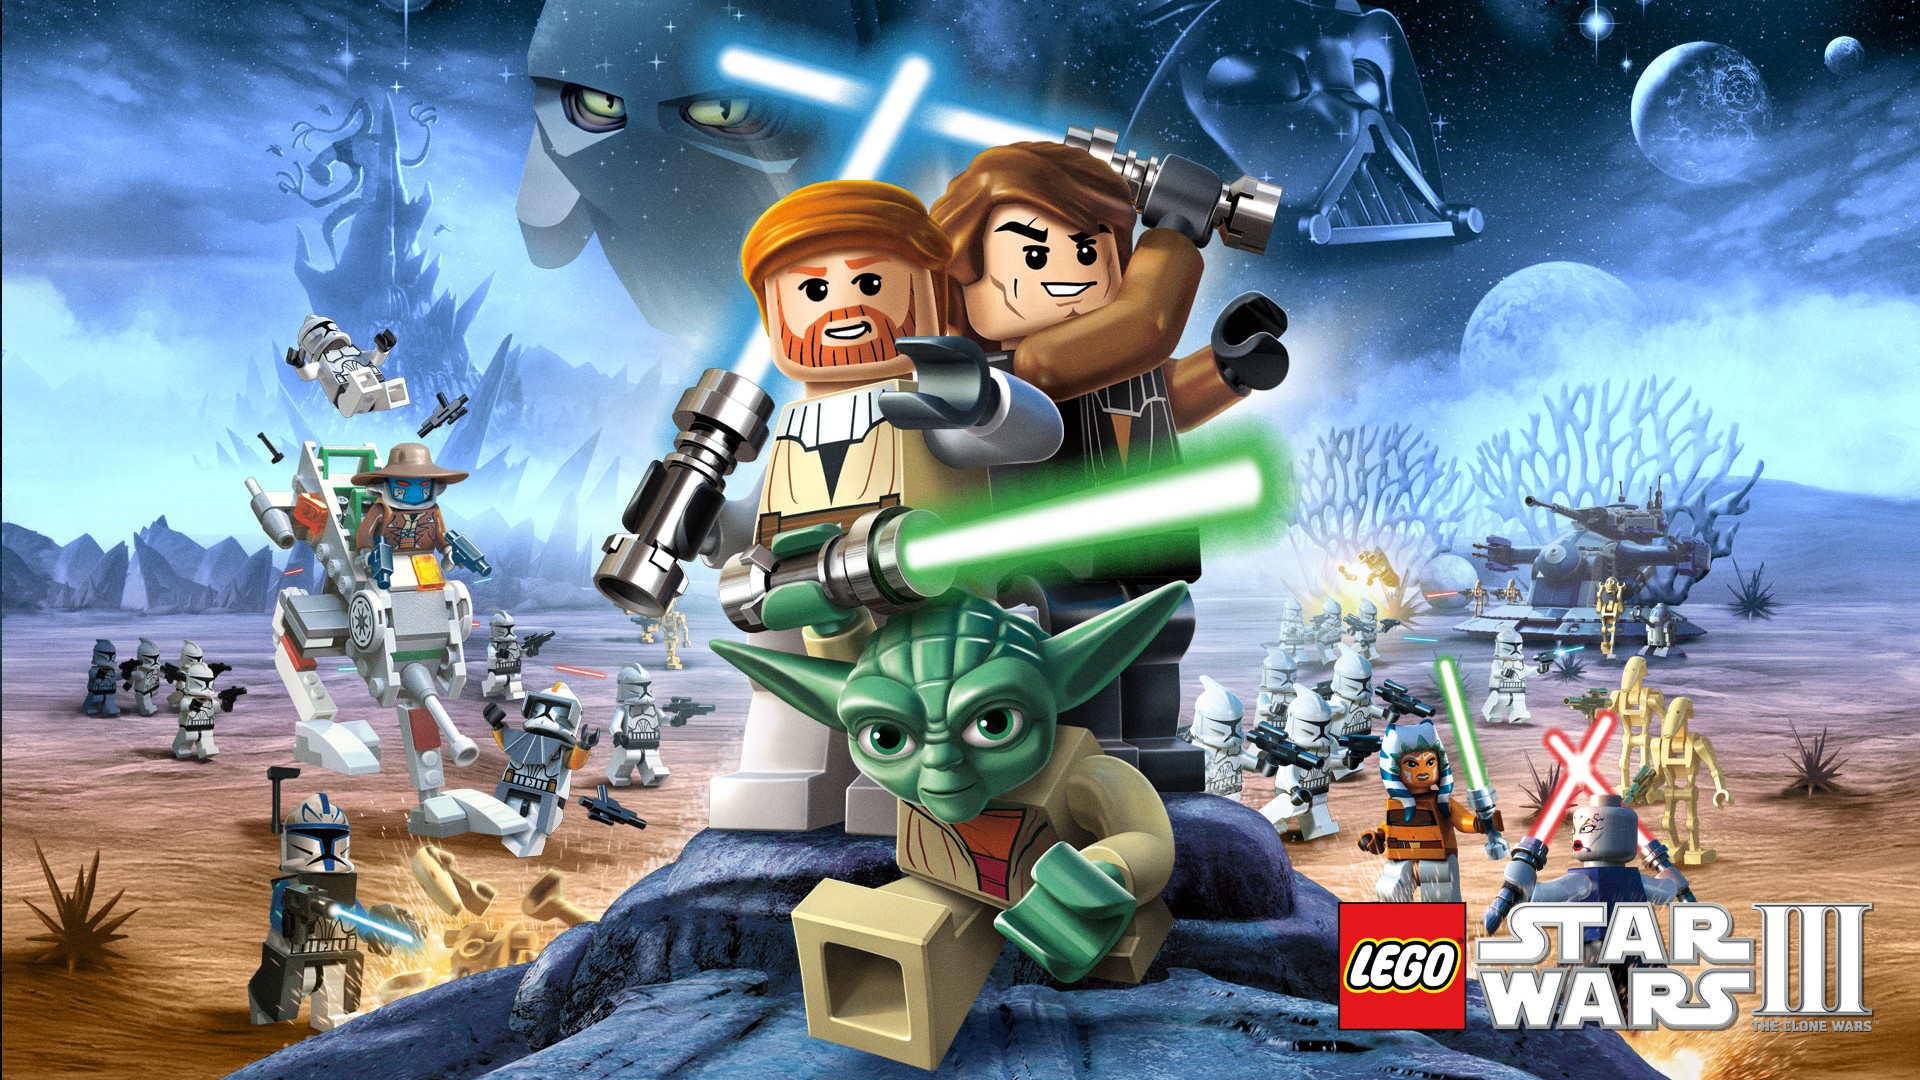 Yoda Anakin Skywalker Obi Wan Kenobi Lego 1920x1080